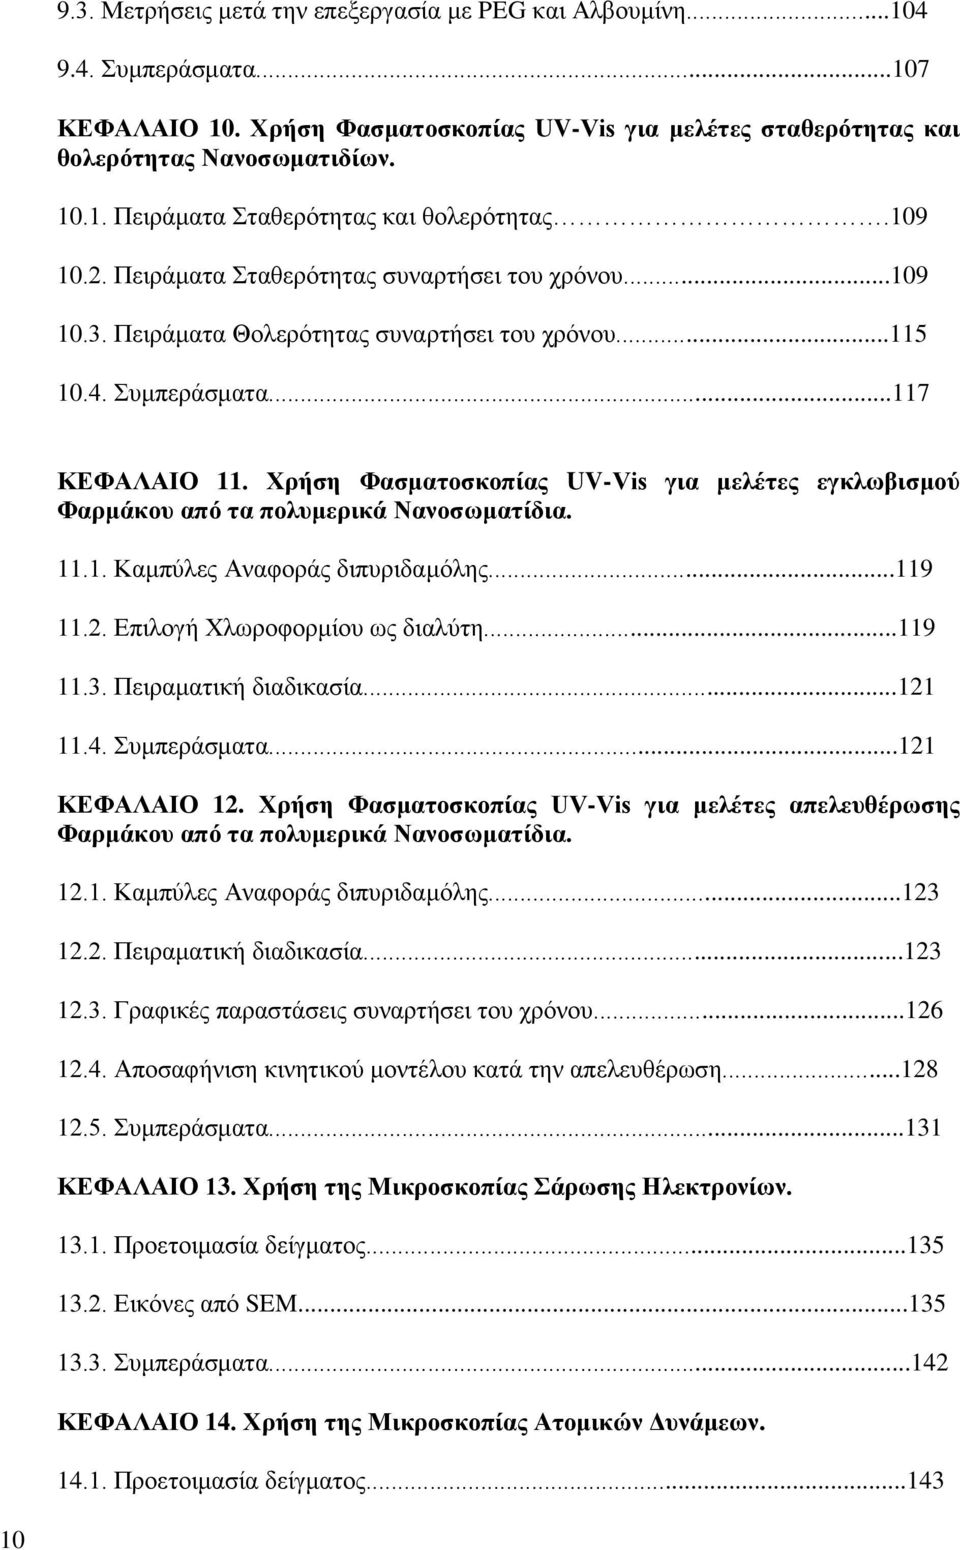 Χρήση Φασματοσκοπίας UV-Vis για μελέτες εγκλωβισμού Φαρμάκου από τα πολυμερικά Νανοσωματίδια. 11.1. Καμπύλες Αναφοράς διπυριδαμόλης...119 11.2. Επιλογή Χλωροφορμίου ως διαλύτη...119 11.3.